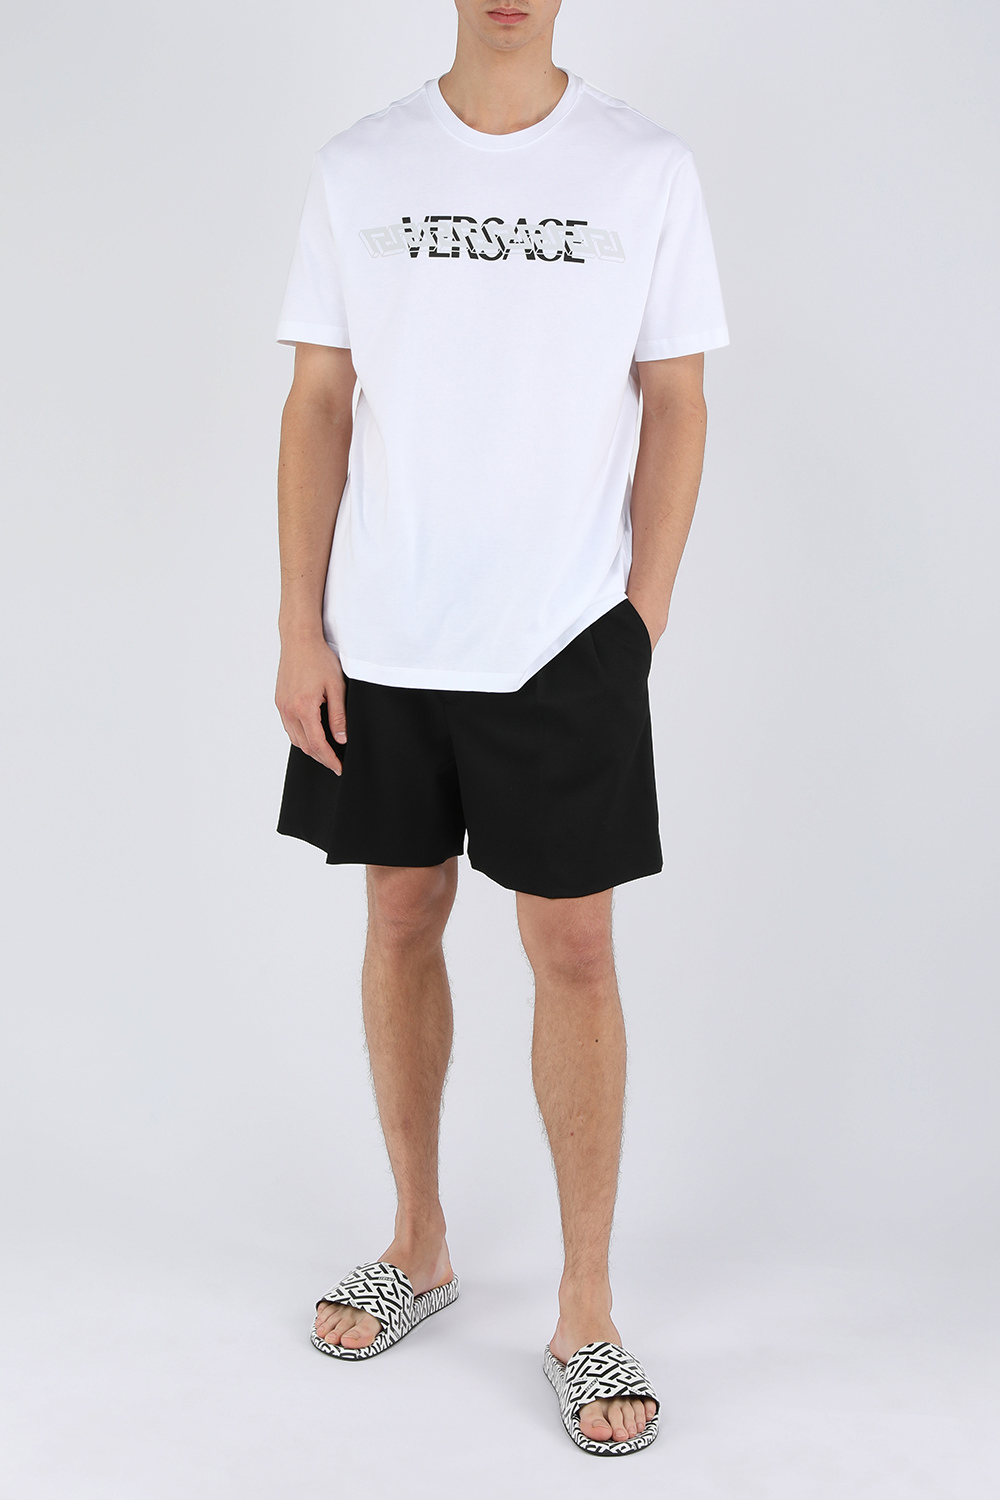 חולצת טי עם הדפס לוגו VERSACE